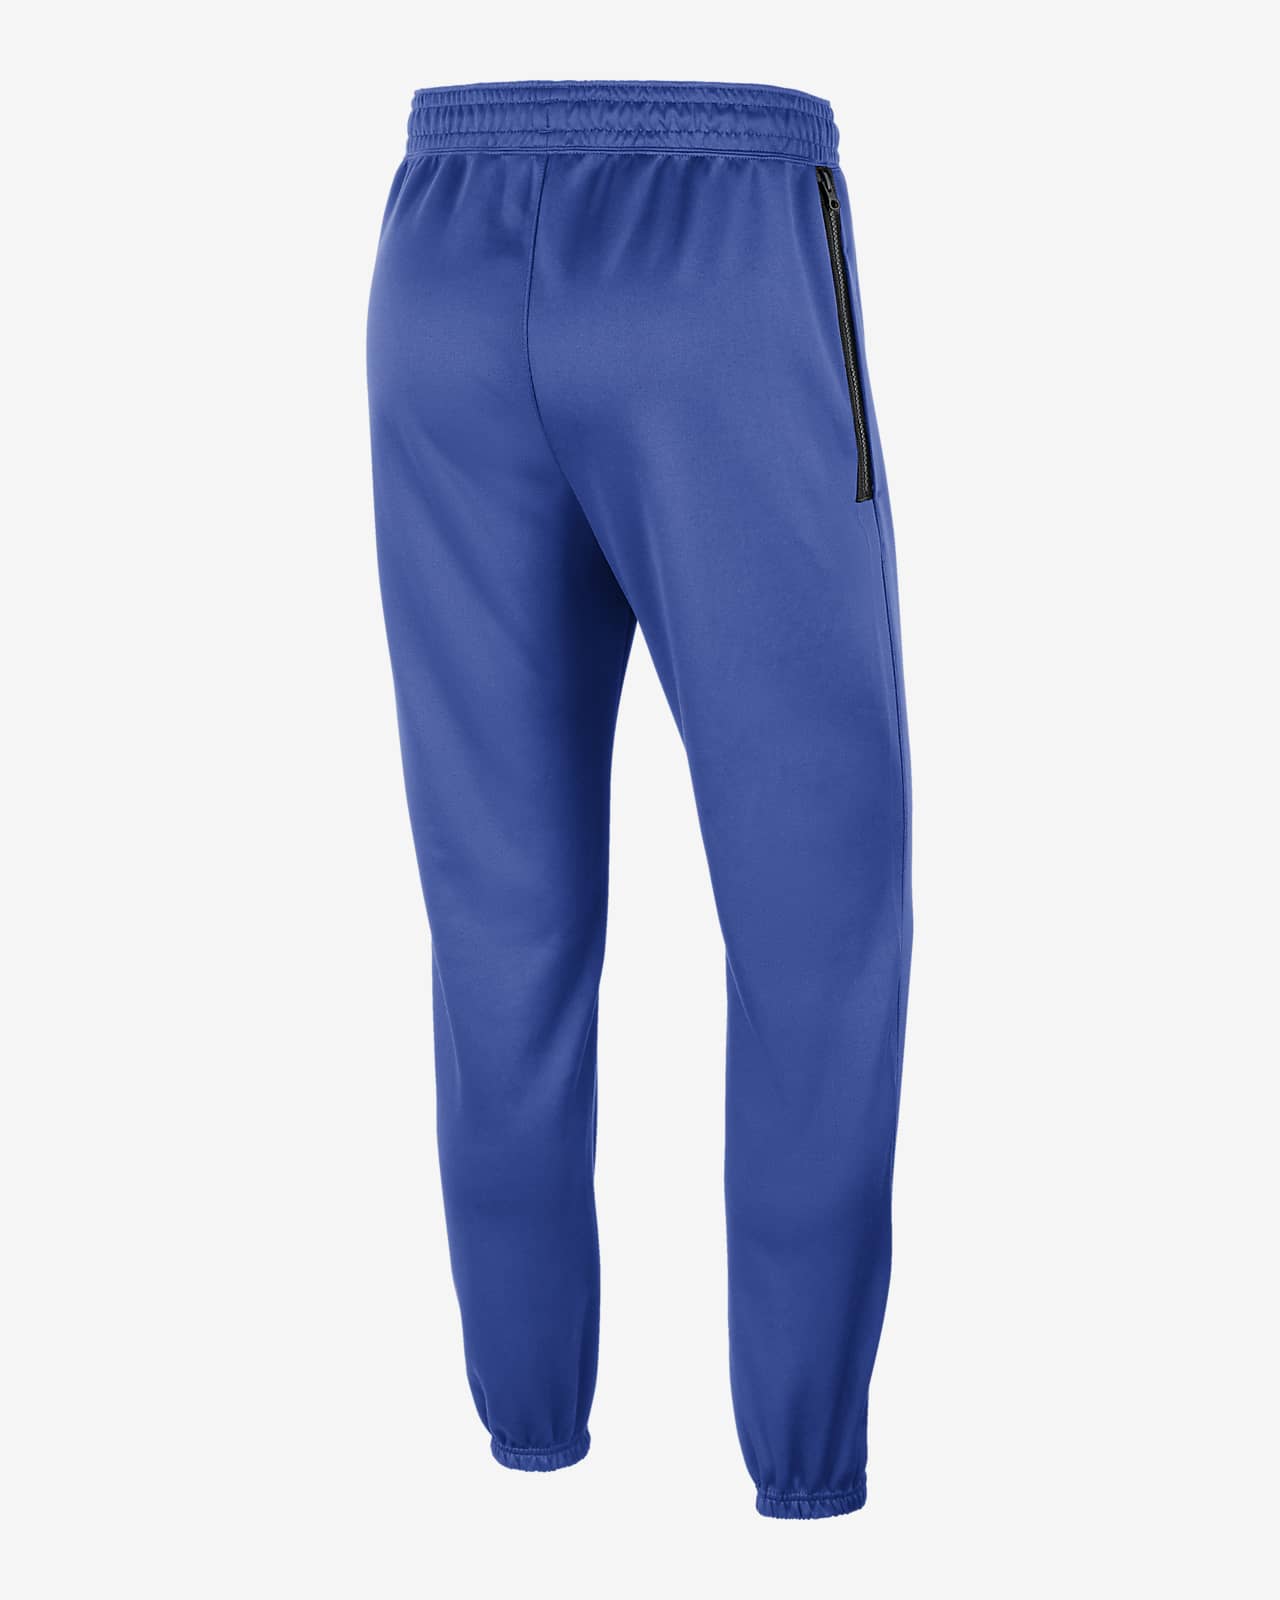 Nike College Dri-FIT Spotlight (Duke) Men's Pants.